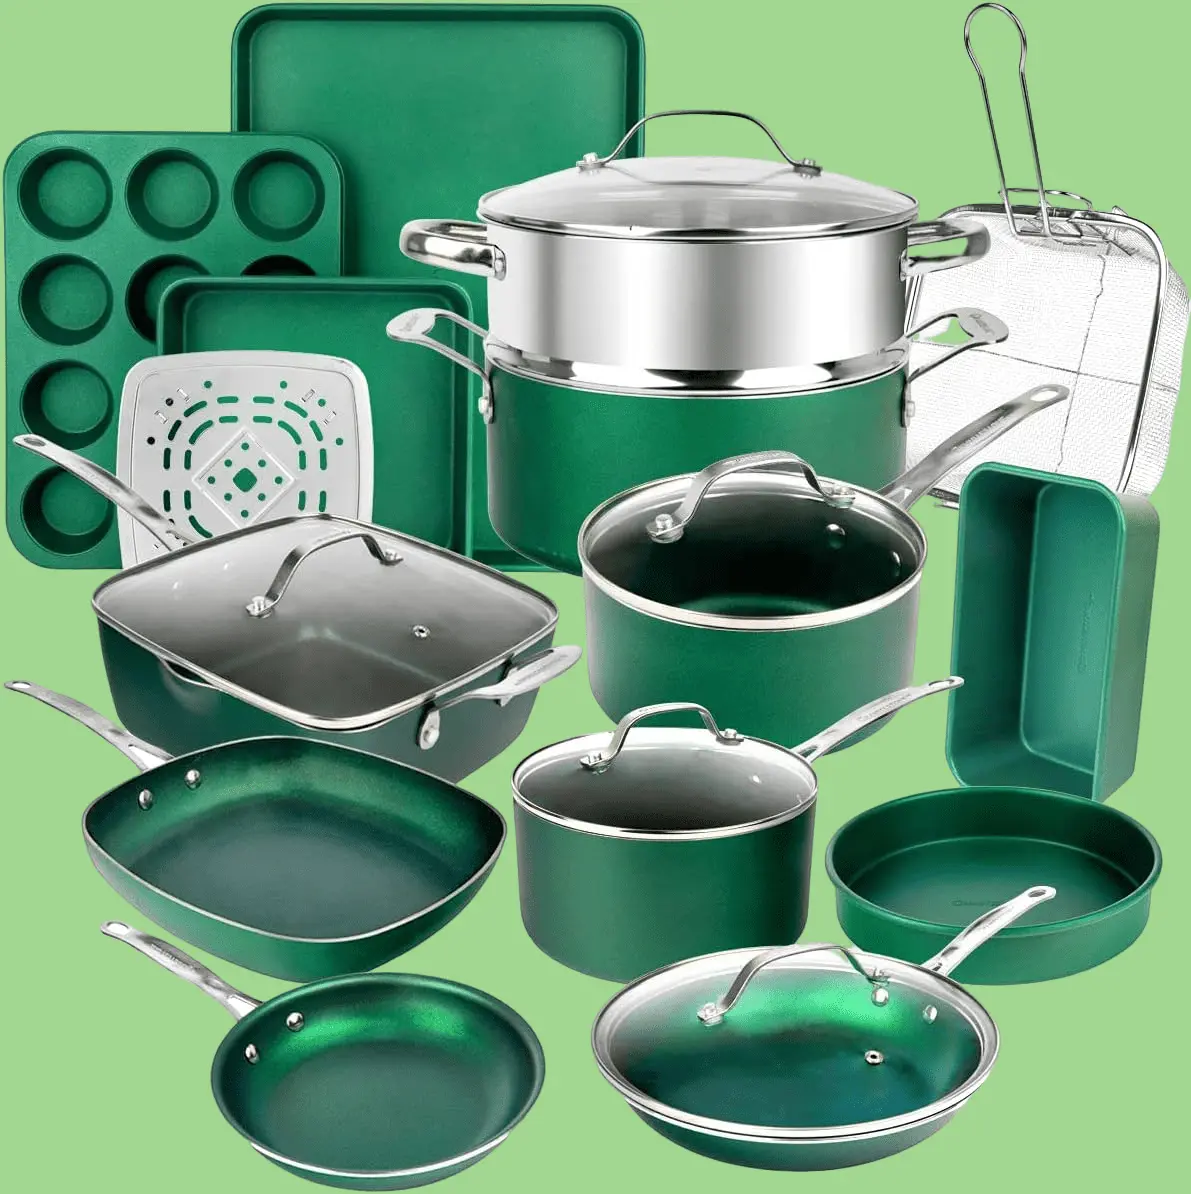 green diamond 20 piece cookware set